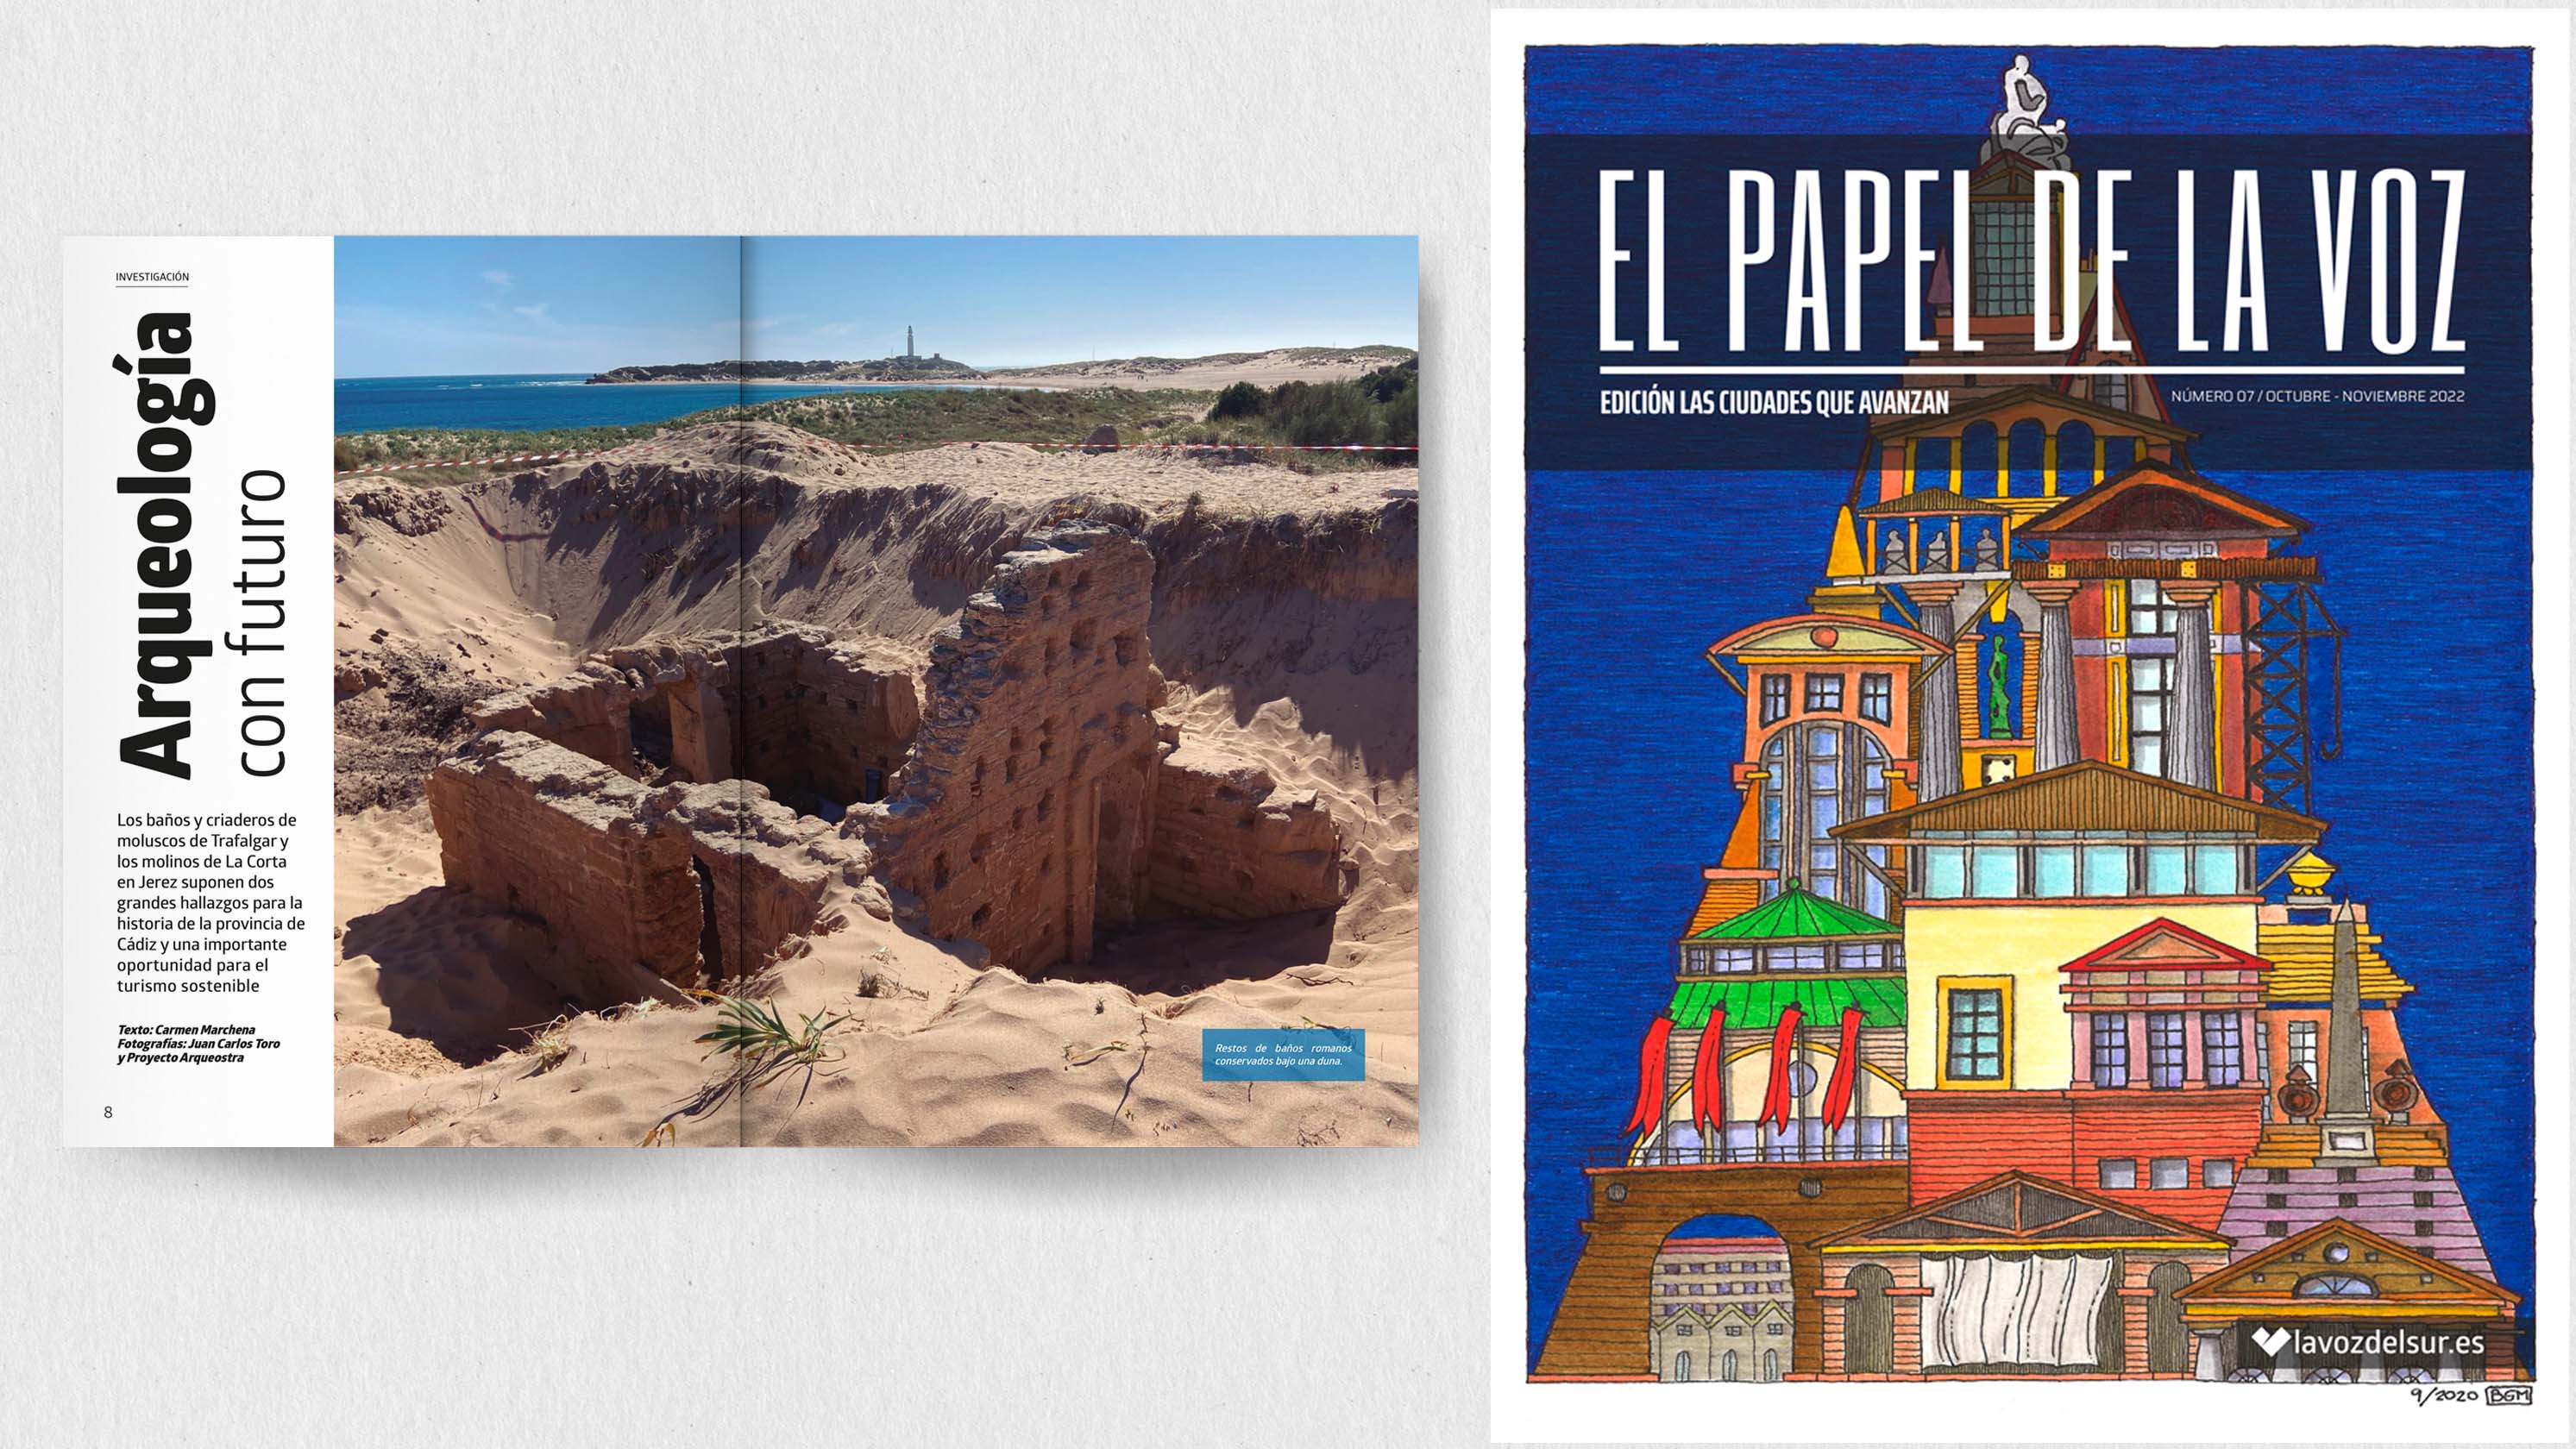 Ya puedes leer el nuevo número de la revista 'El Papel de La Voz' (edición Las Ciudades que Avanzan).